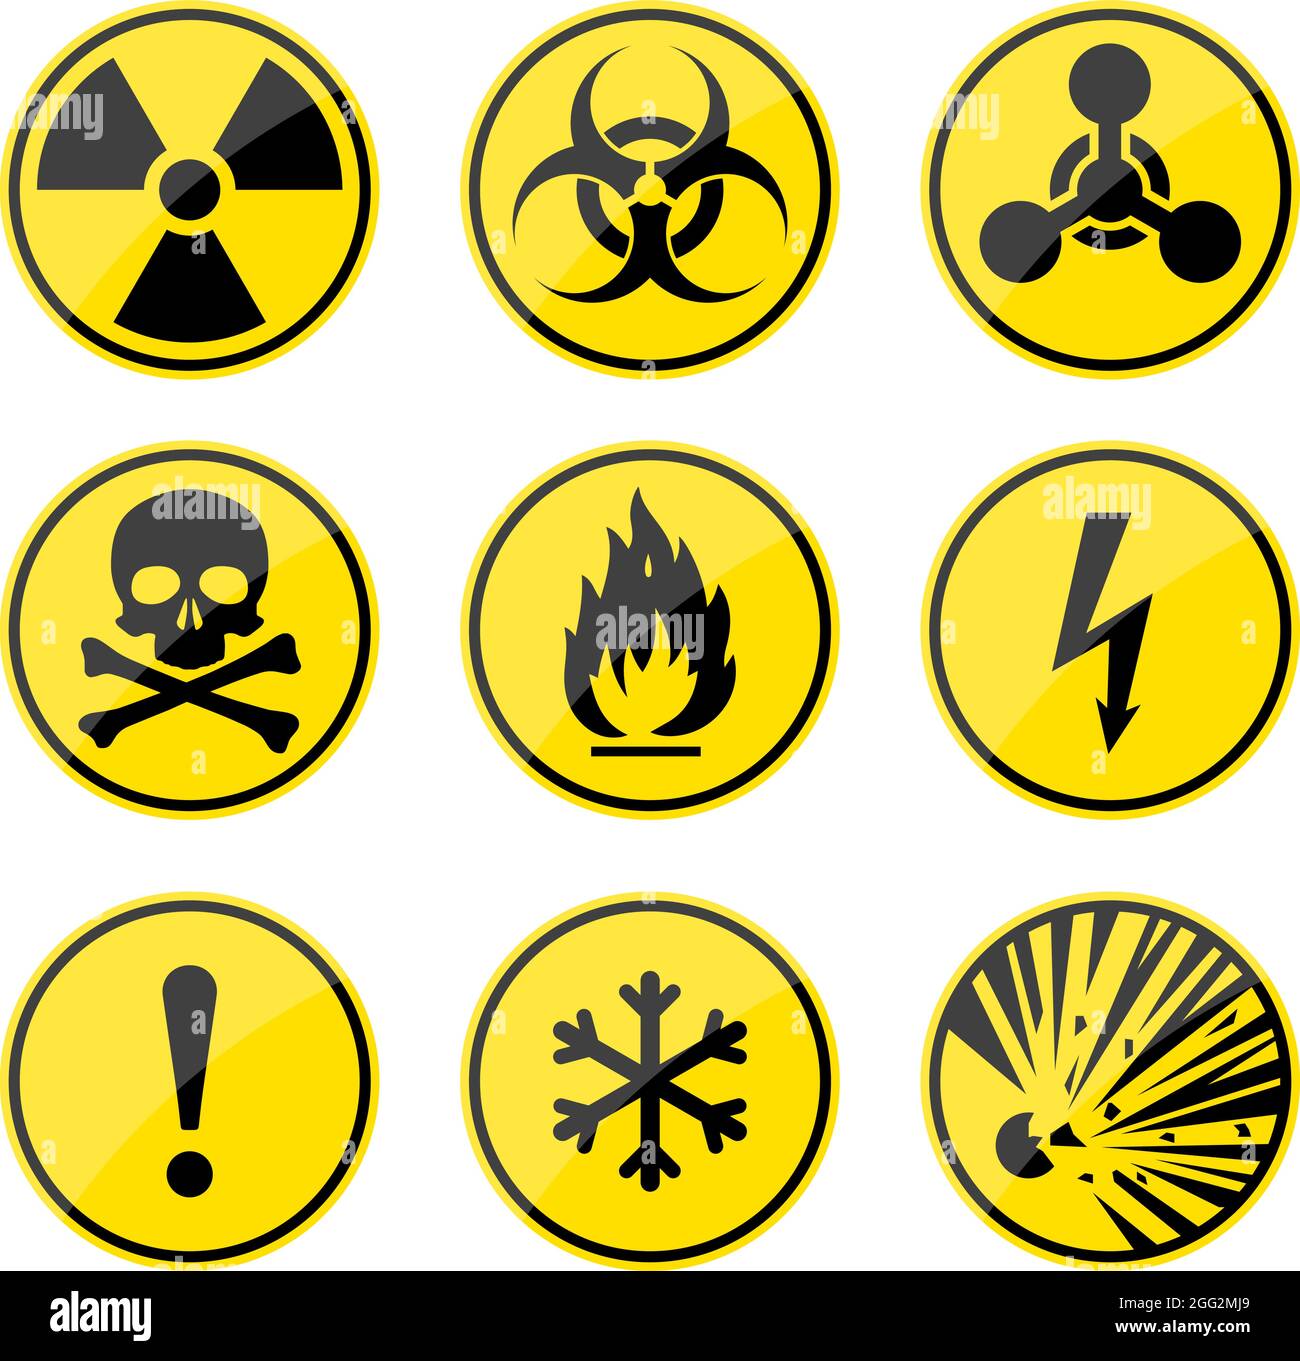 Segnali di avvertenza impostati. Icone di pericolo rotonde. Segnale di radiazione. Segnale di rischio biologico. Segno tossico. Simbolo nucleare. Simbolo infiammabile. Segnali di attenzione. Illustrazione Vettoriale